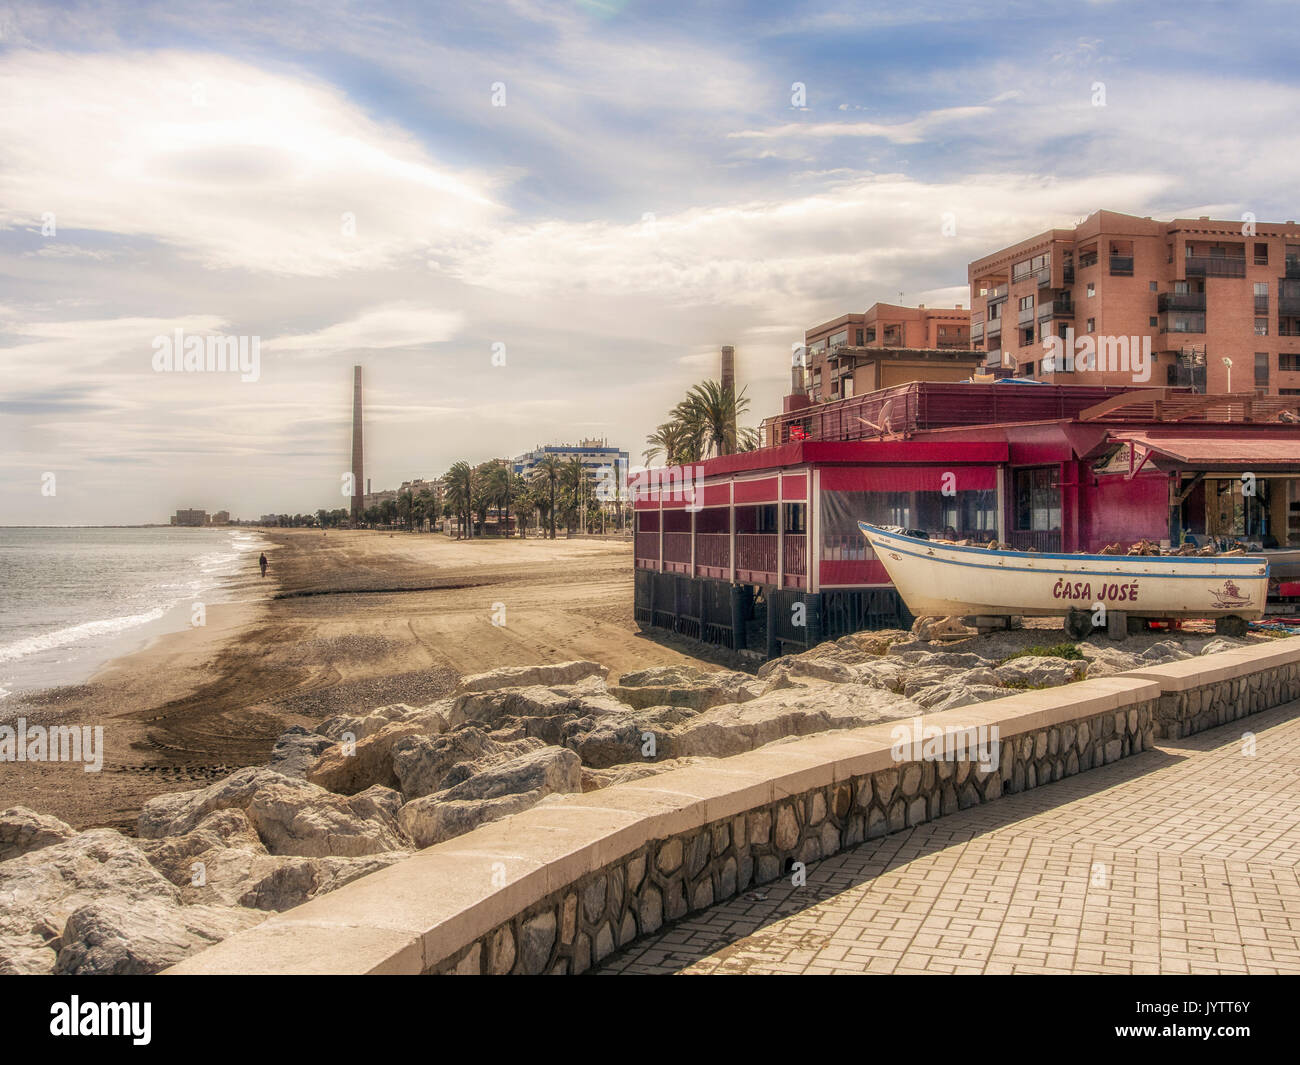 MALAGA, SPANIEN - 09. MÄRZ 2016: Blick am Strand hinter dem hübschen Merendero Casa Jose Strandrestaurant Stockfoto